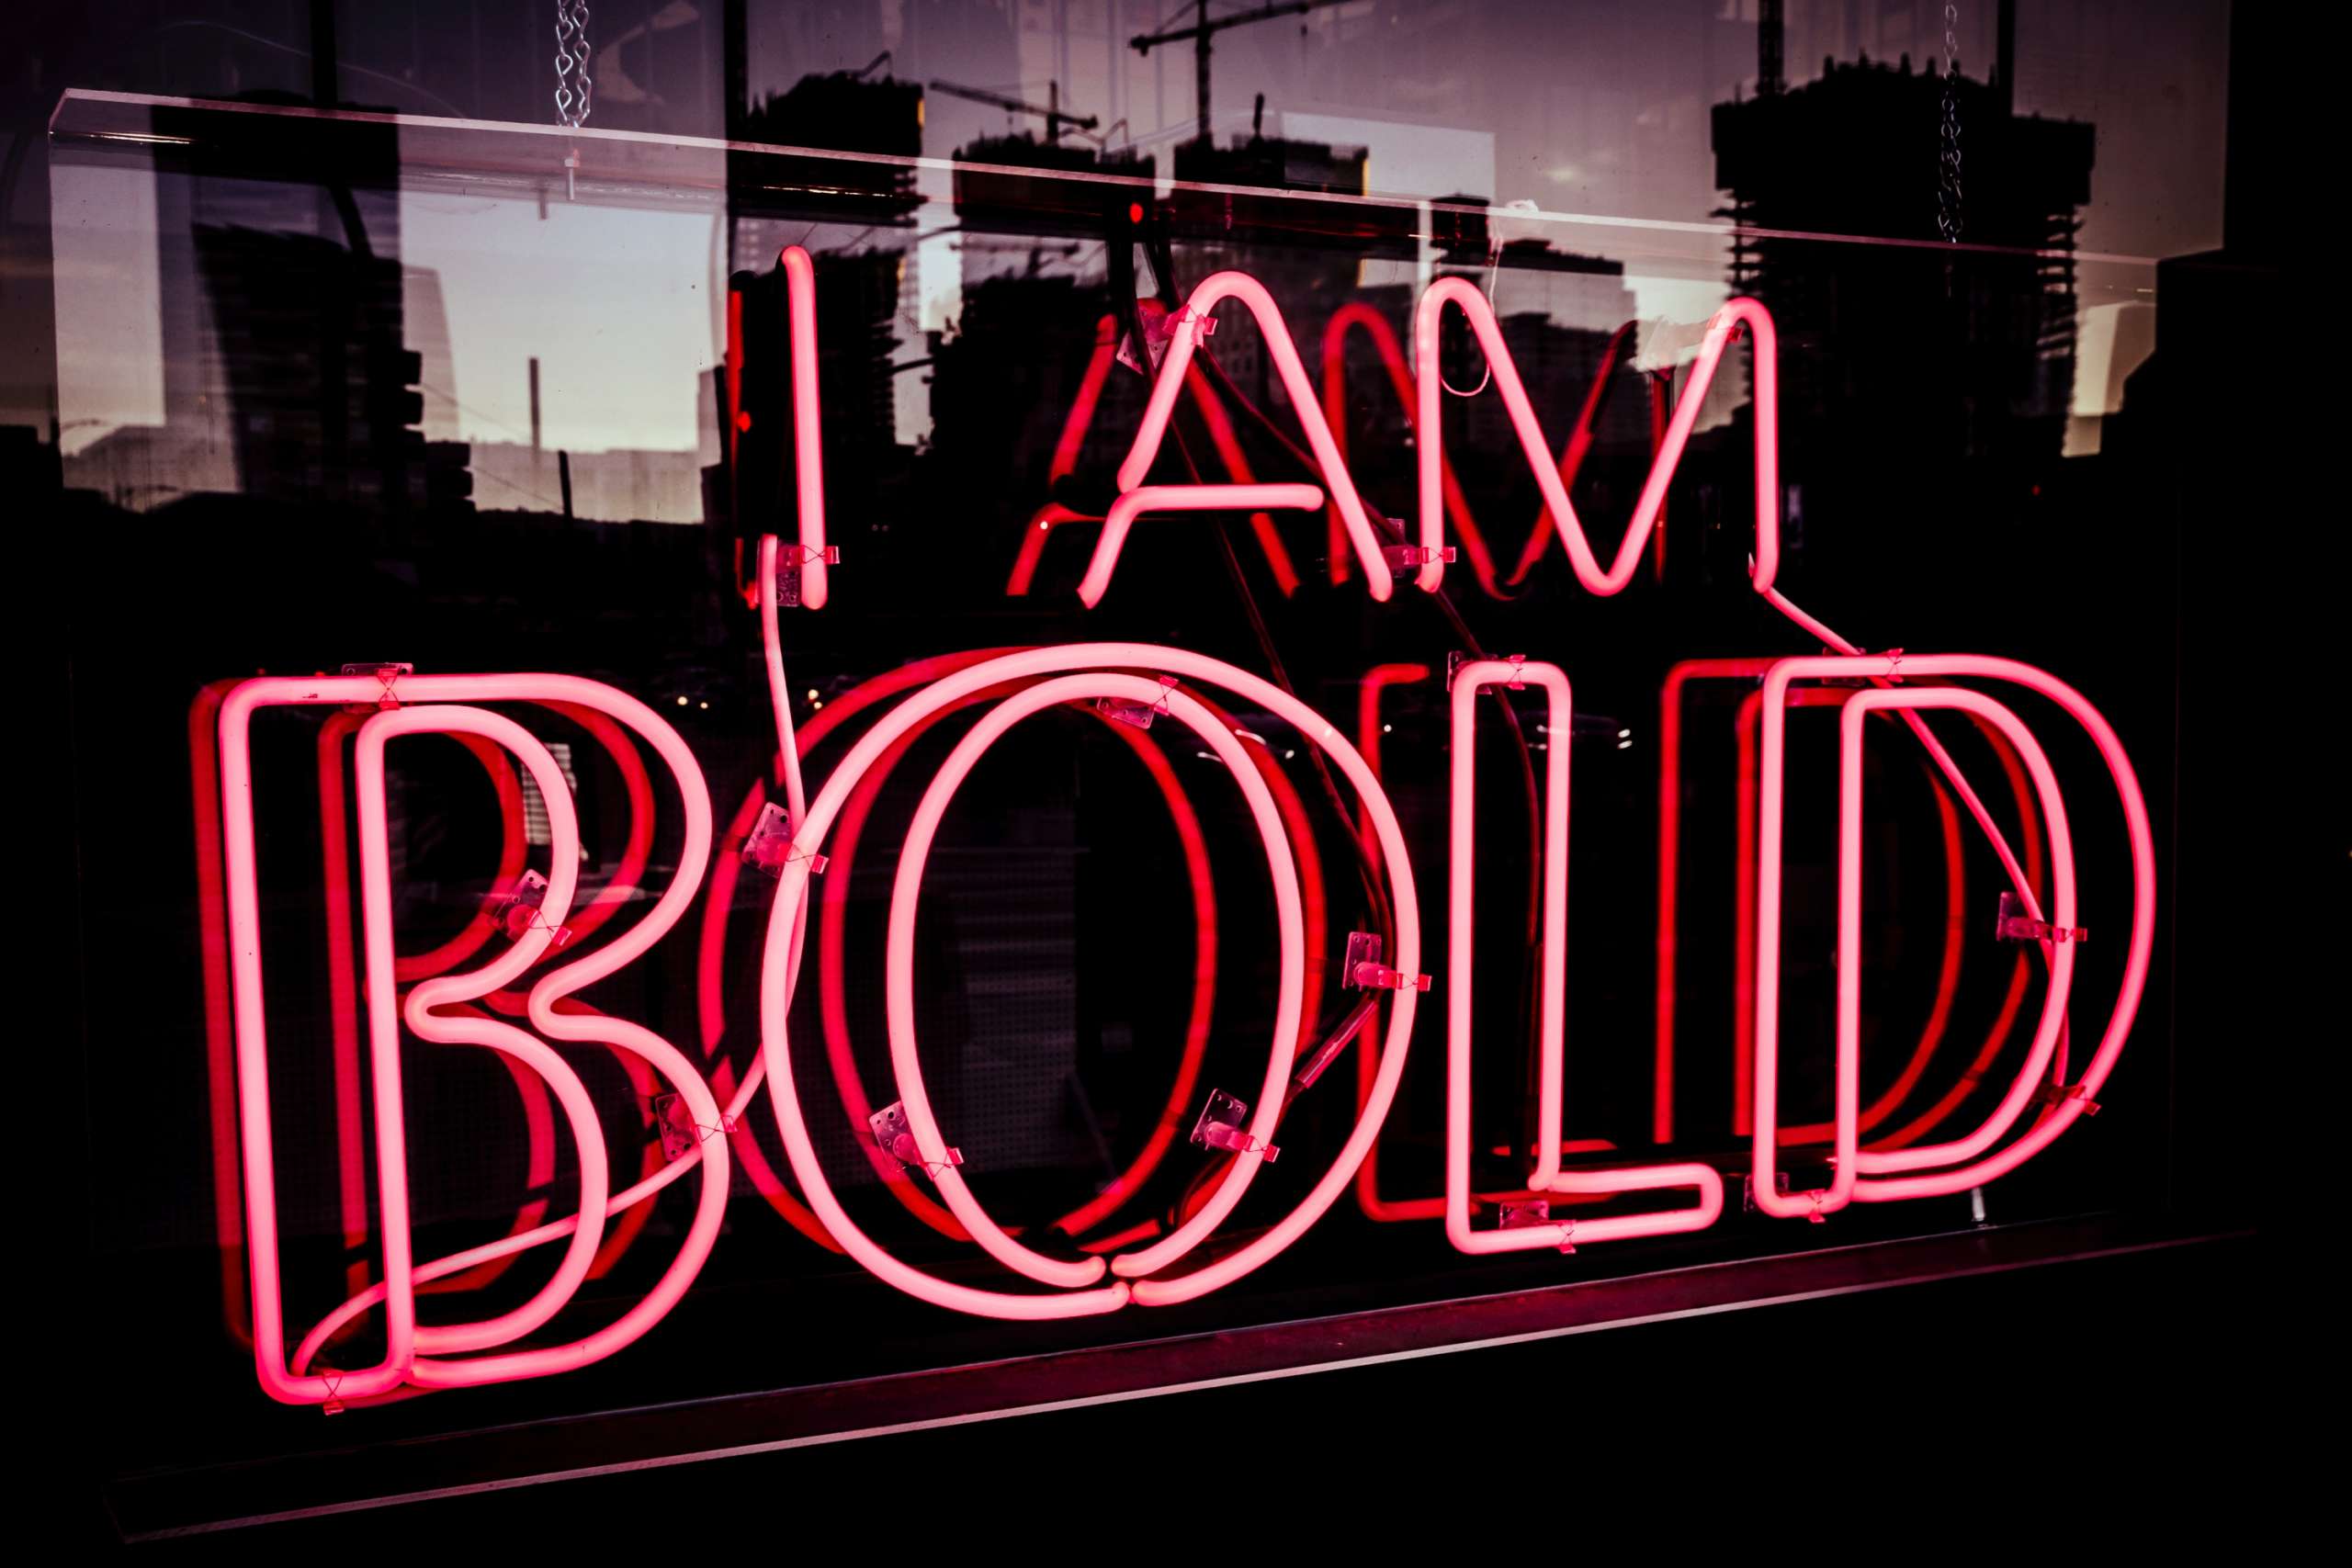 positive affirmation - I am Bold